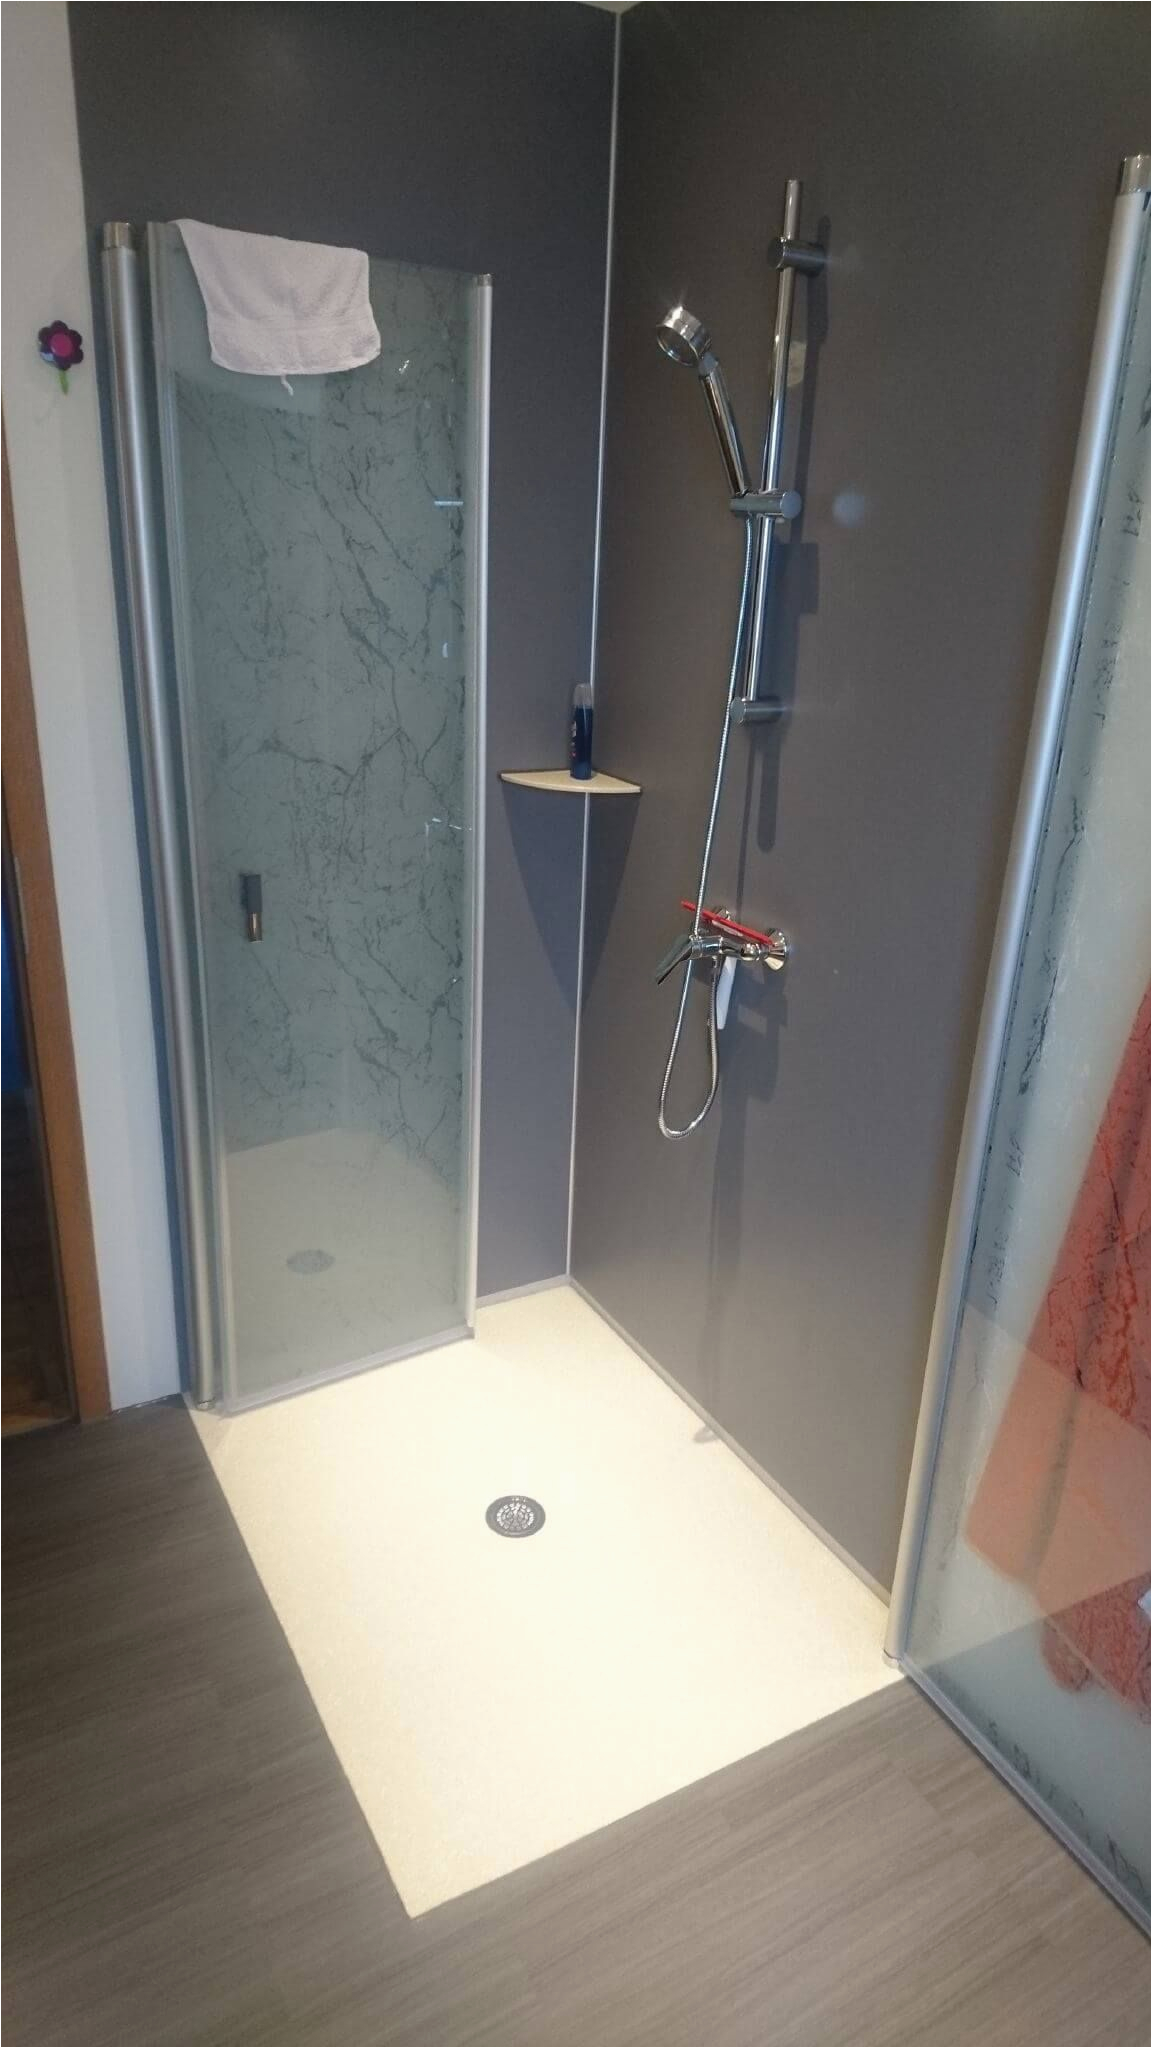 Badezimmer Fliesen Ersatz Komplettbadsanierung Mit Designboden In Holzoptik